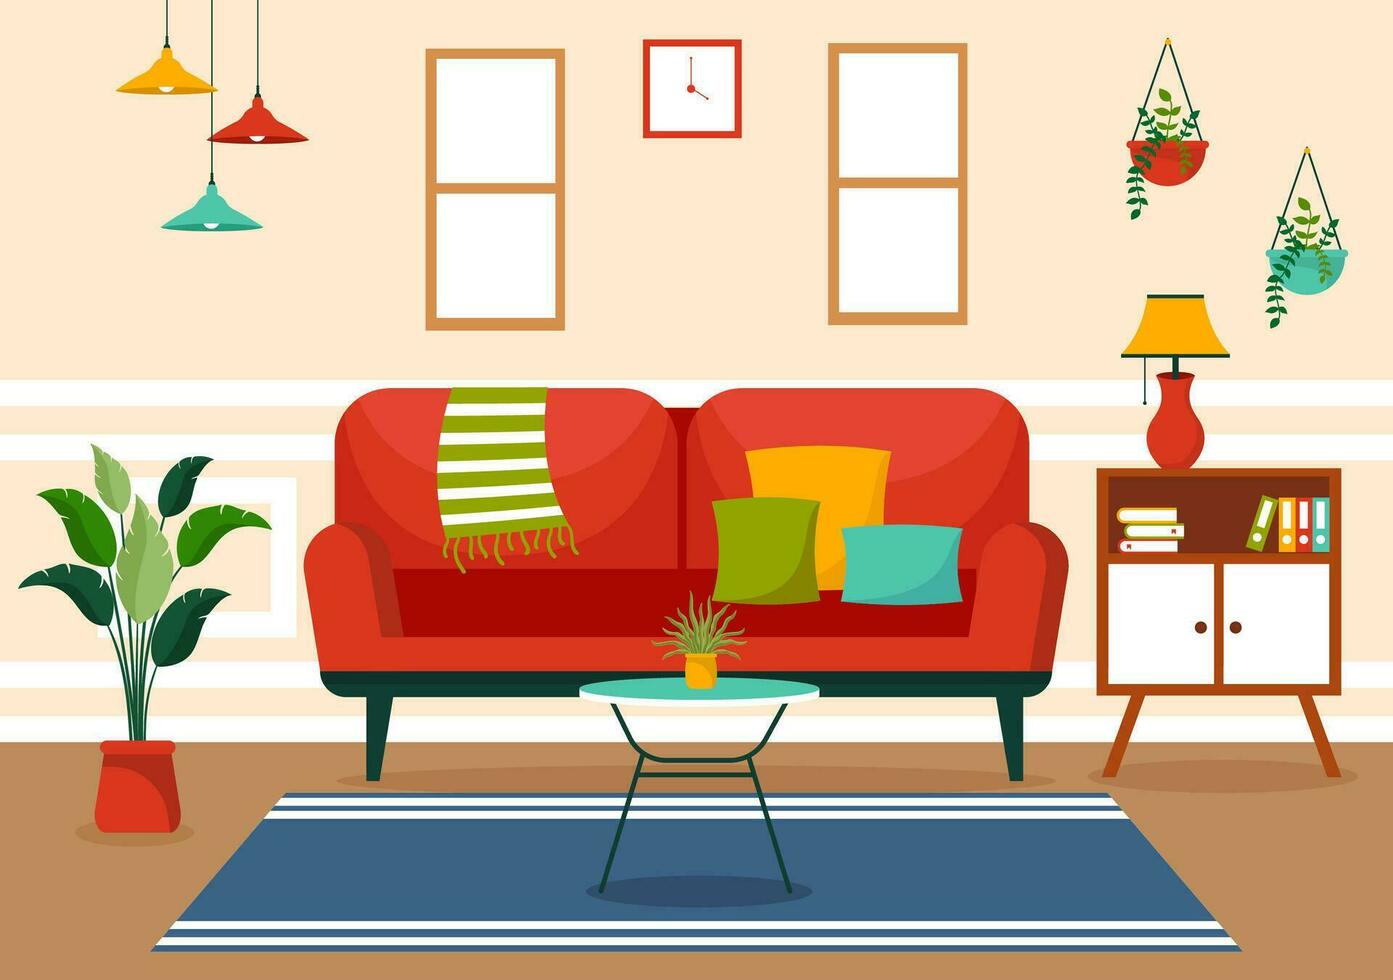 Hem dekor vektor illustration med levande rum interiör och möbel sådan som bekväm soffa, fönster, stol, hus växter och Tillbehör